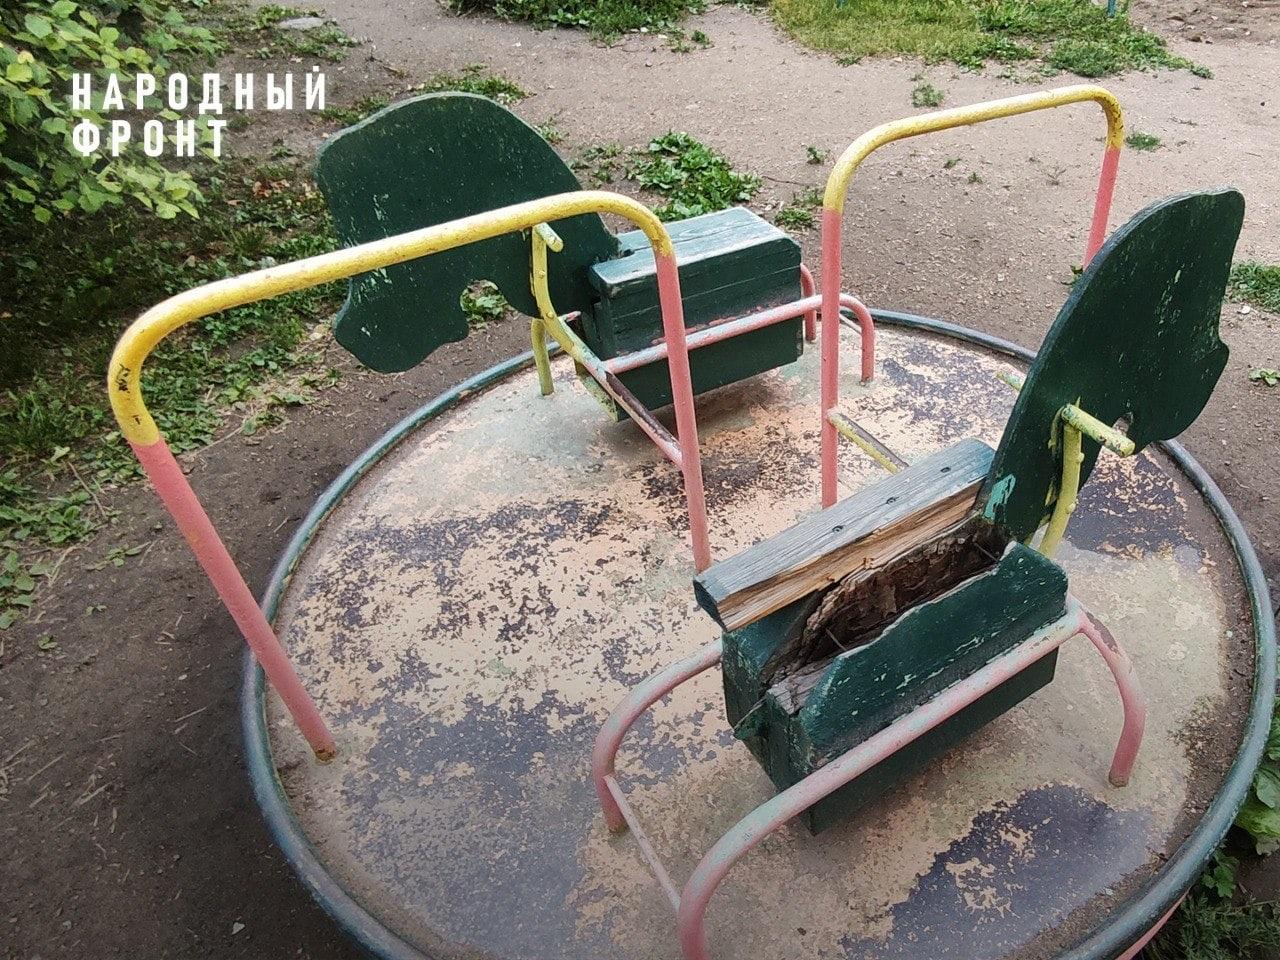 Фото 20 опасных детских площадок выявили в Новосибирской области 4